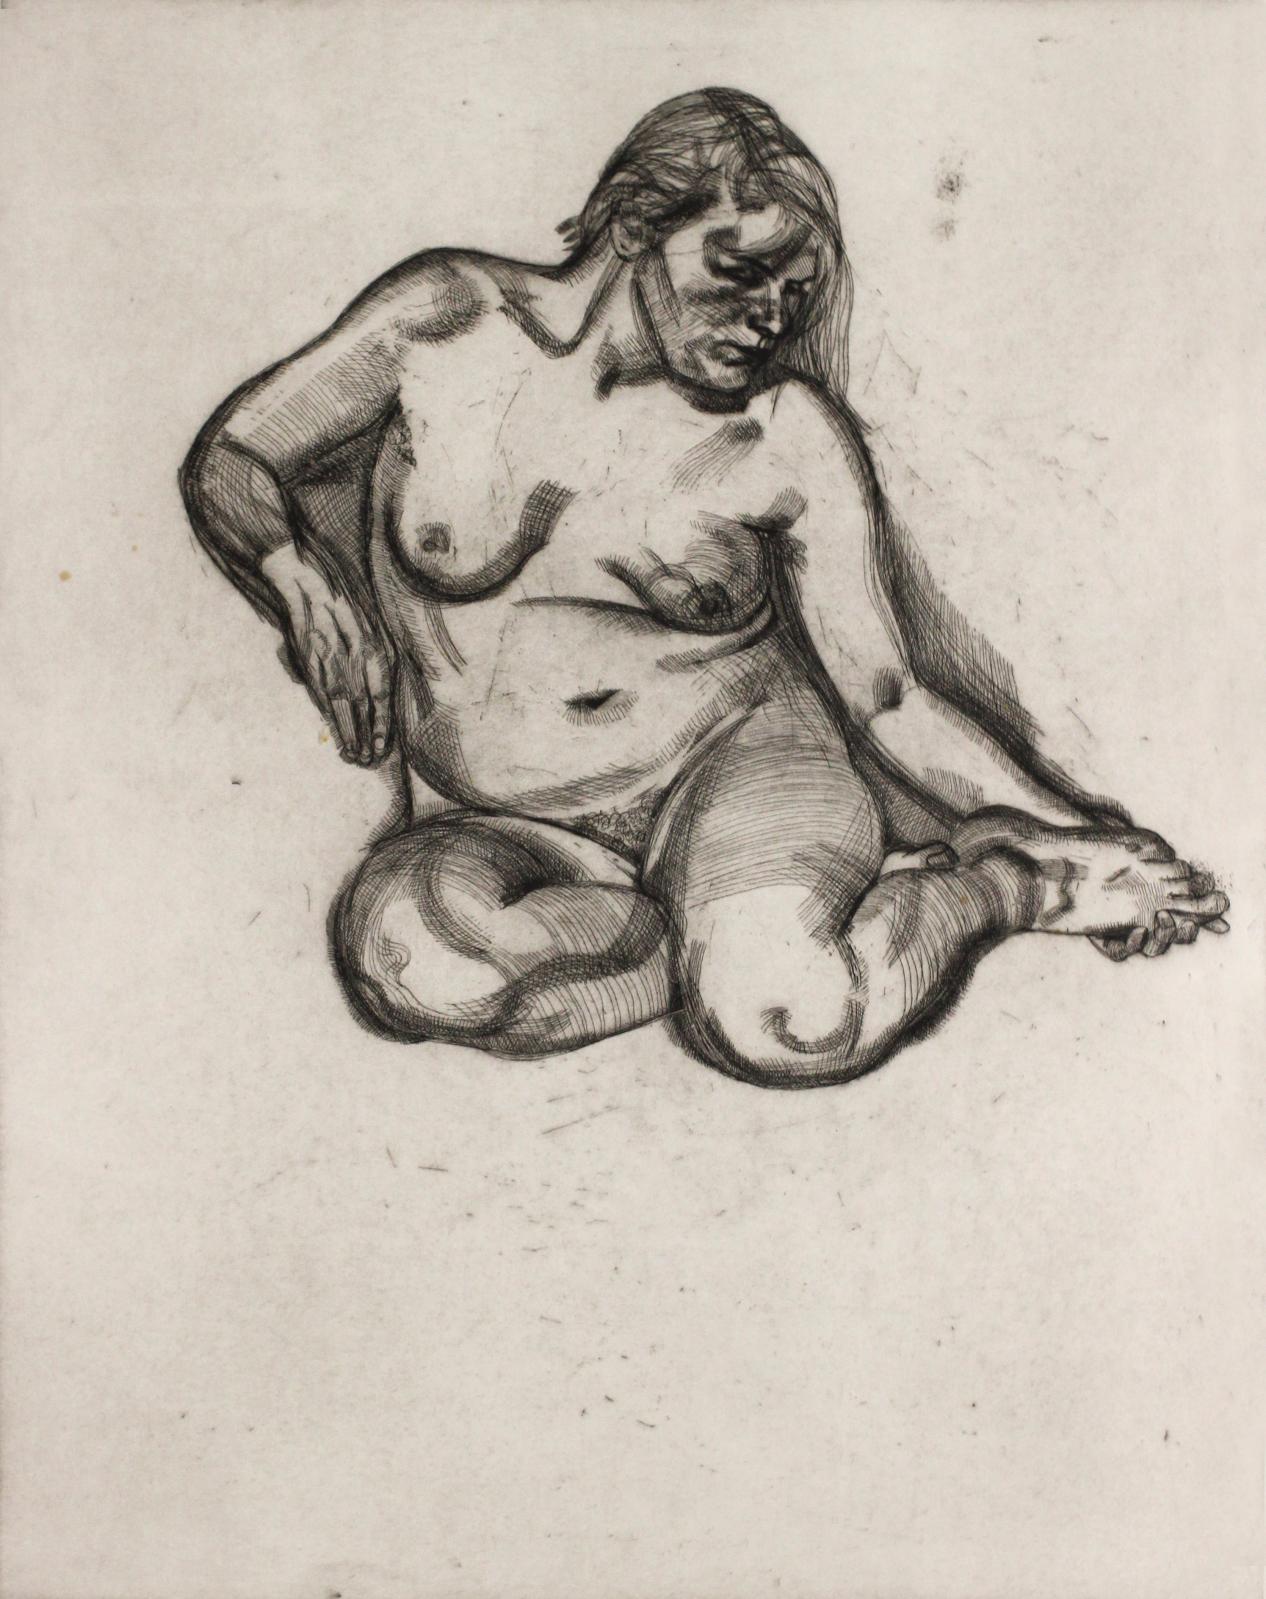 Lucian Freud graveur, Joan Miró lithographe 